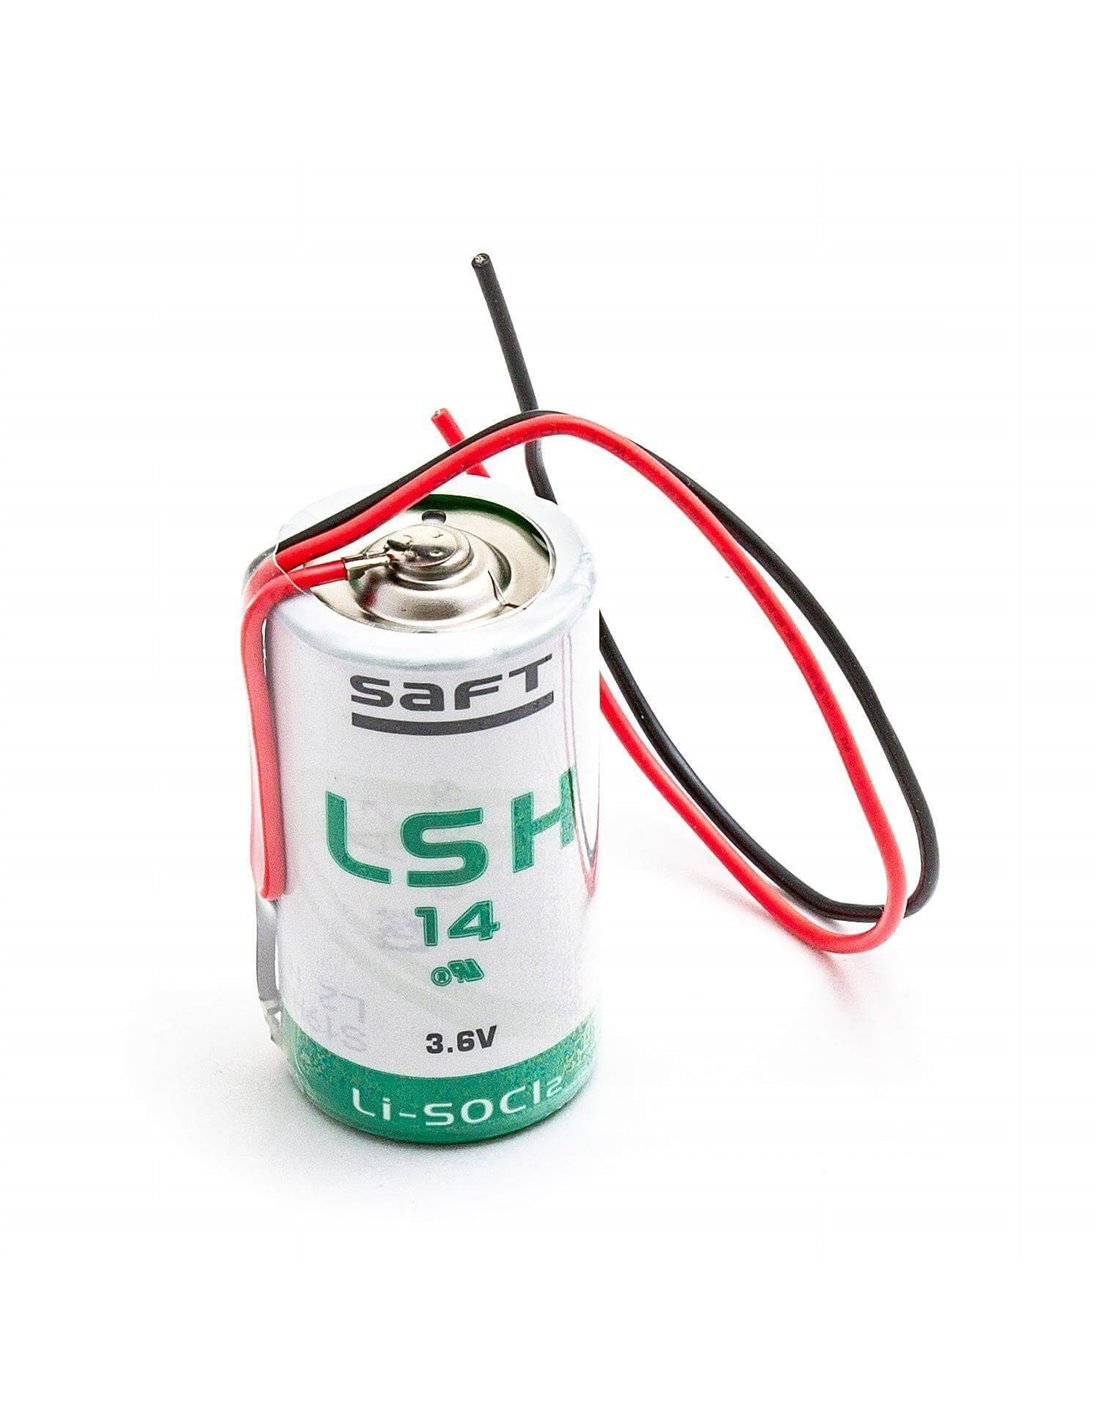 Battery Model Saft Lsh14ba, Lsh-14ba, Lith-14-saft, 01n4919 3.6V, 5800 mAh